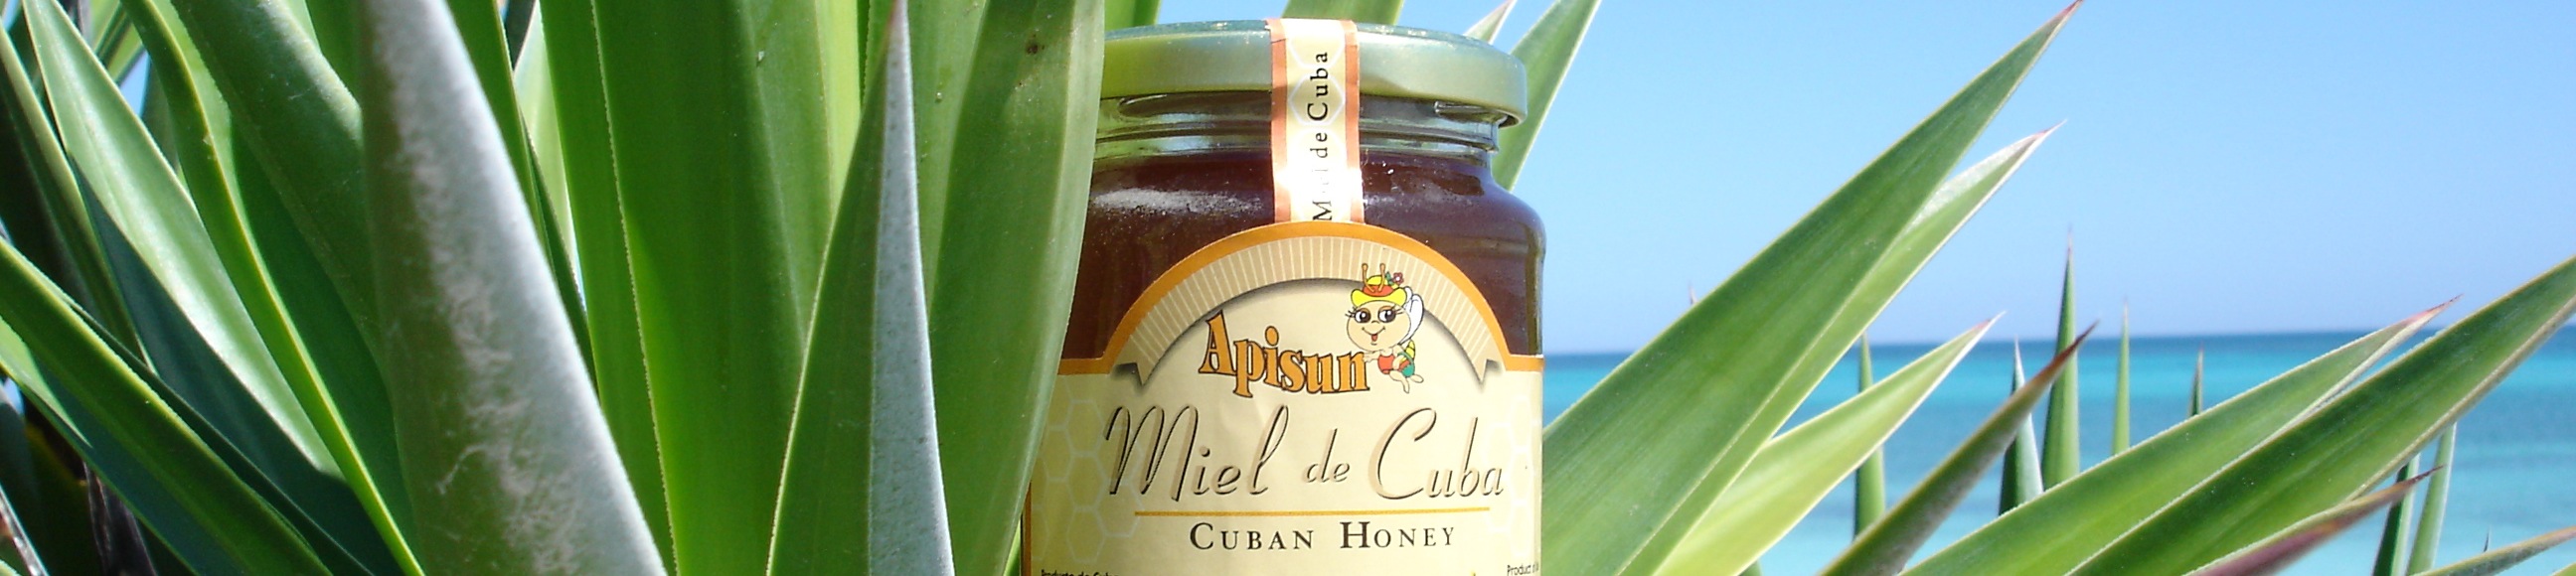 Cuban honey.JPG